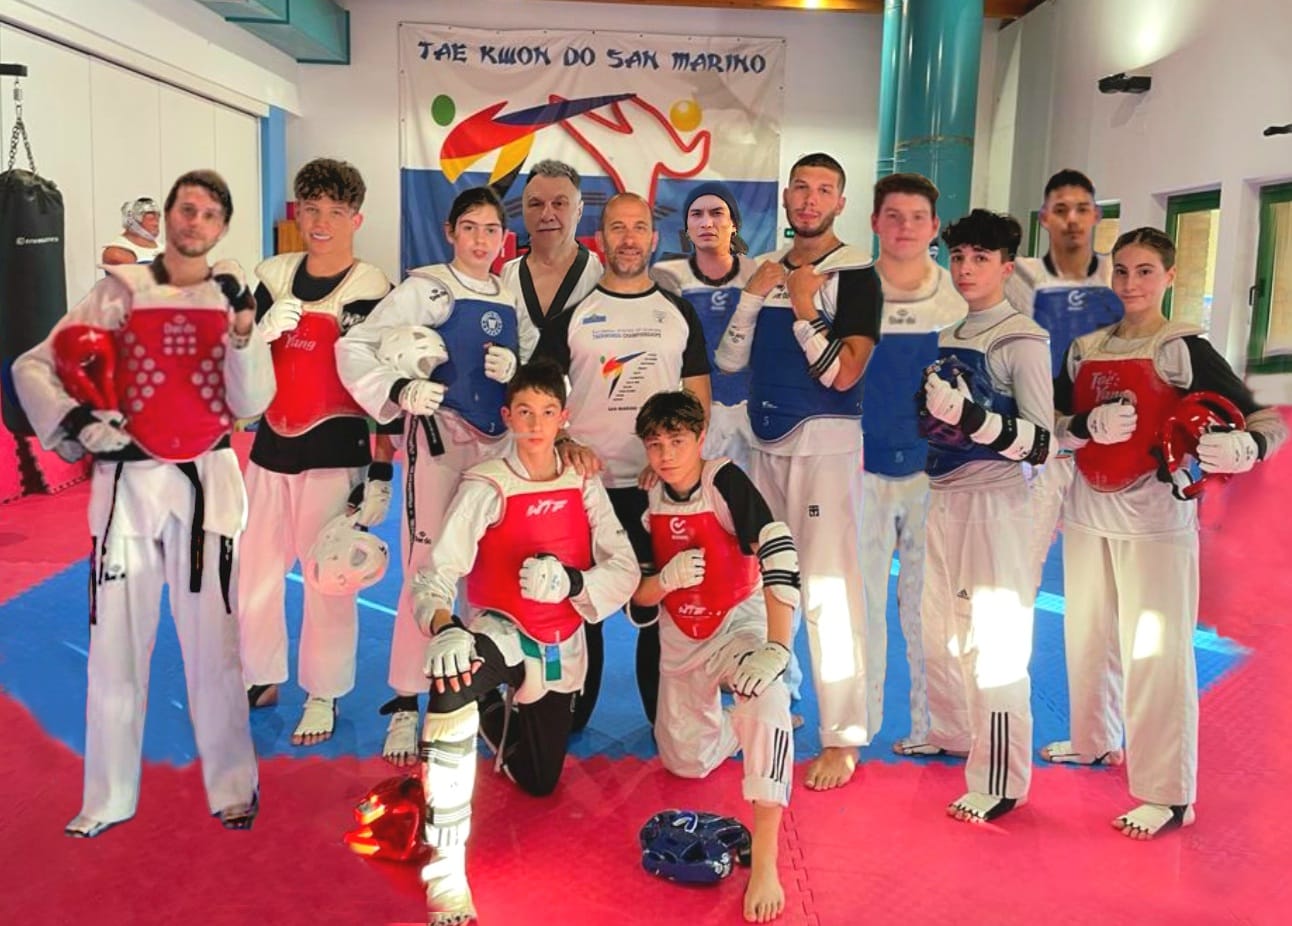 Doppio appuntamento per gli atleti del Taekwondo San Marino: 3 titani al mondiale di Baku e 11 all’interregionale delle Marche